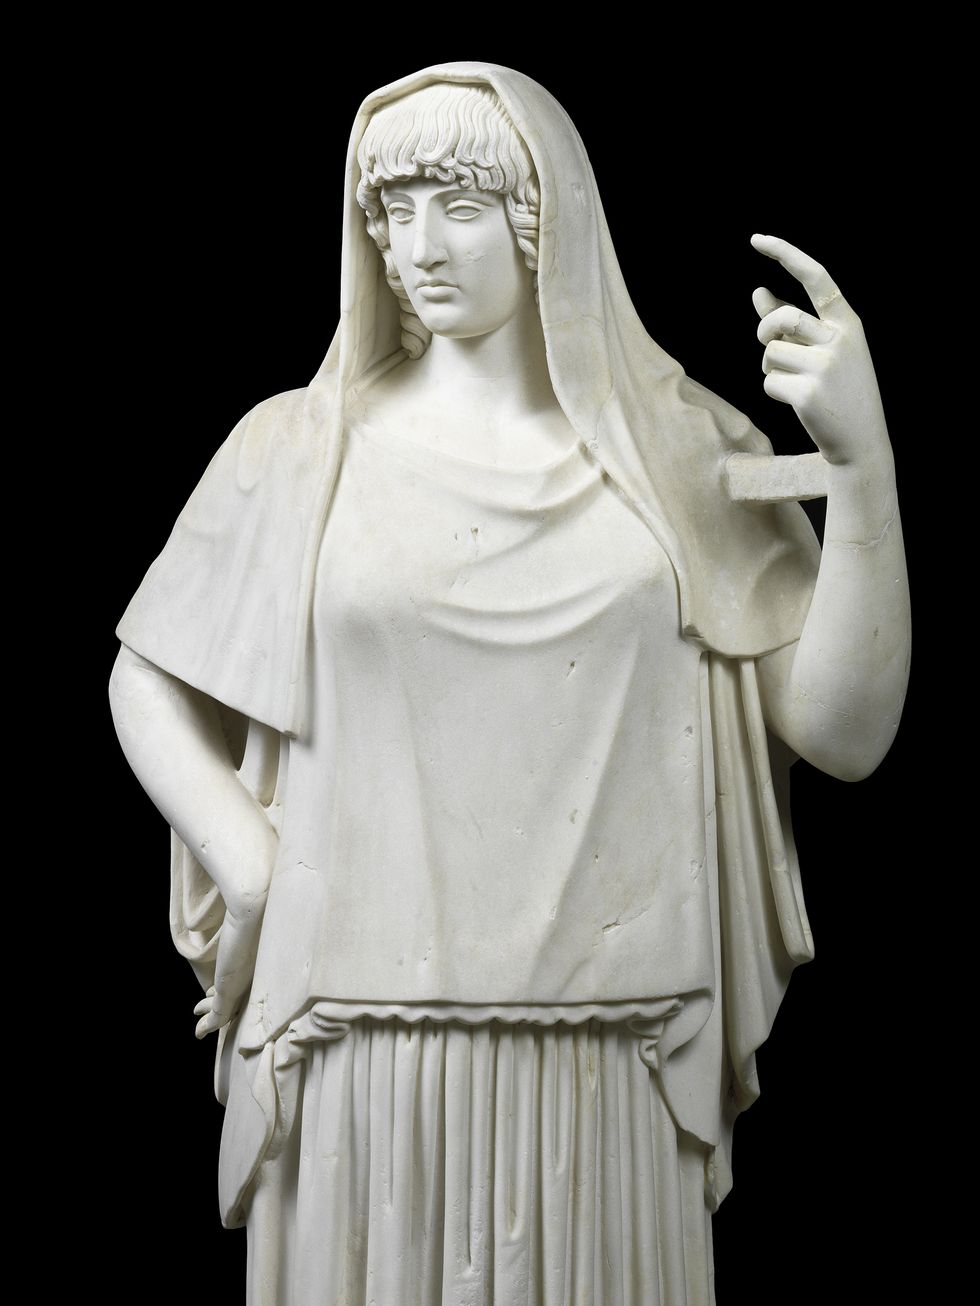 La statua di divinità "Hestia Giustiniani" in marmo pario, appartenente alla collezione dei marmi Torlonia